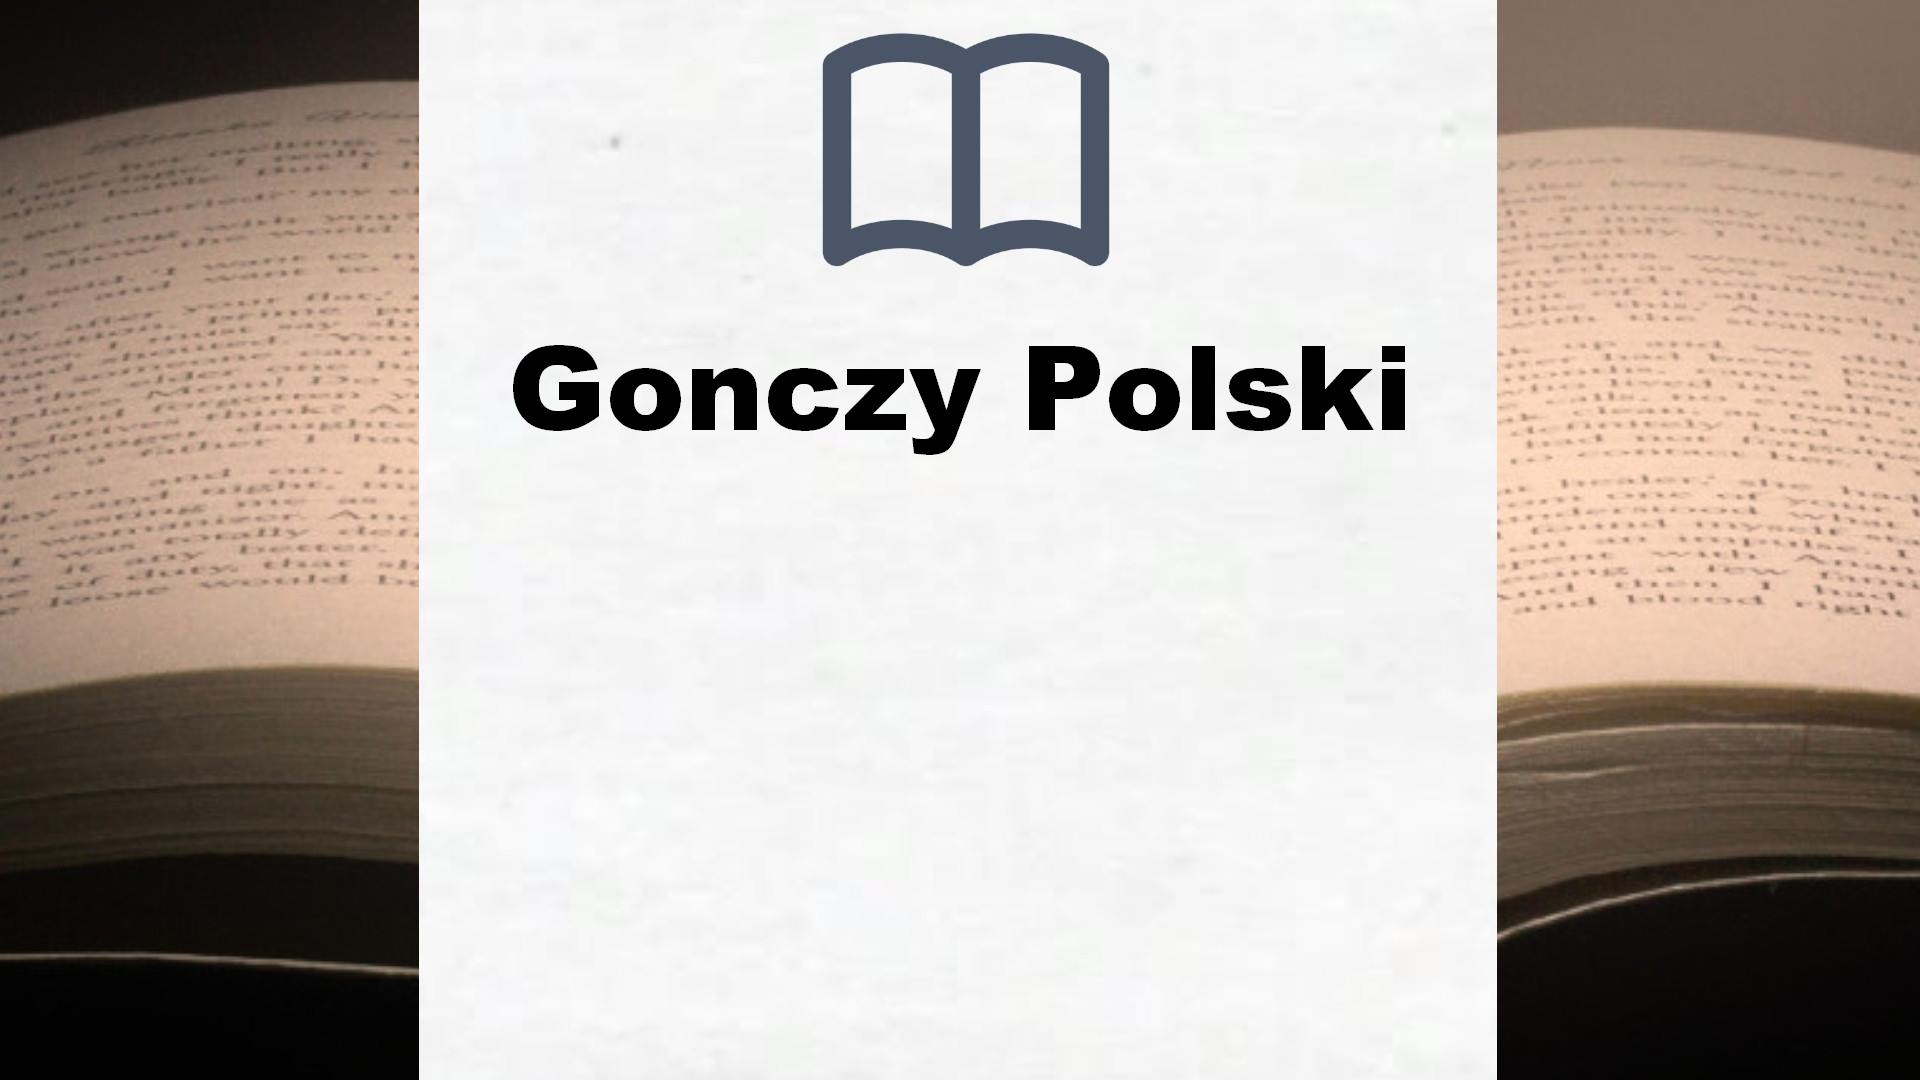 Bücher über Gonczy Polski